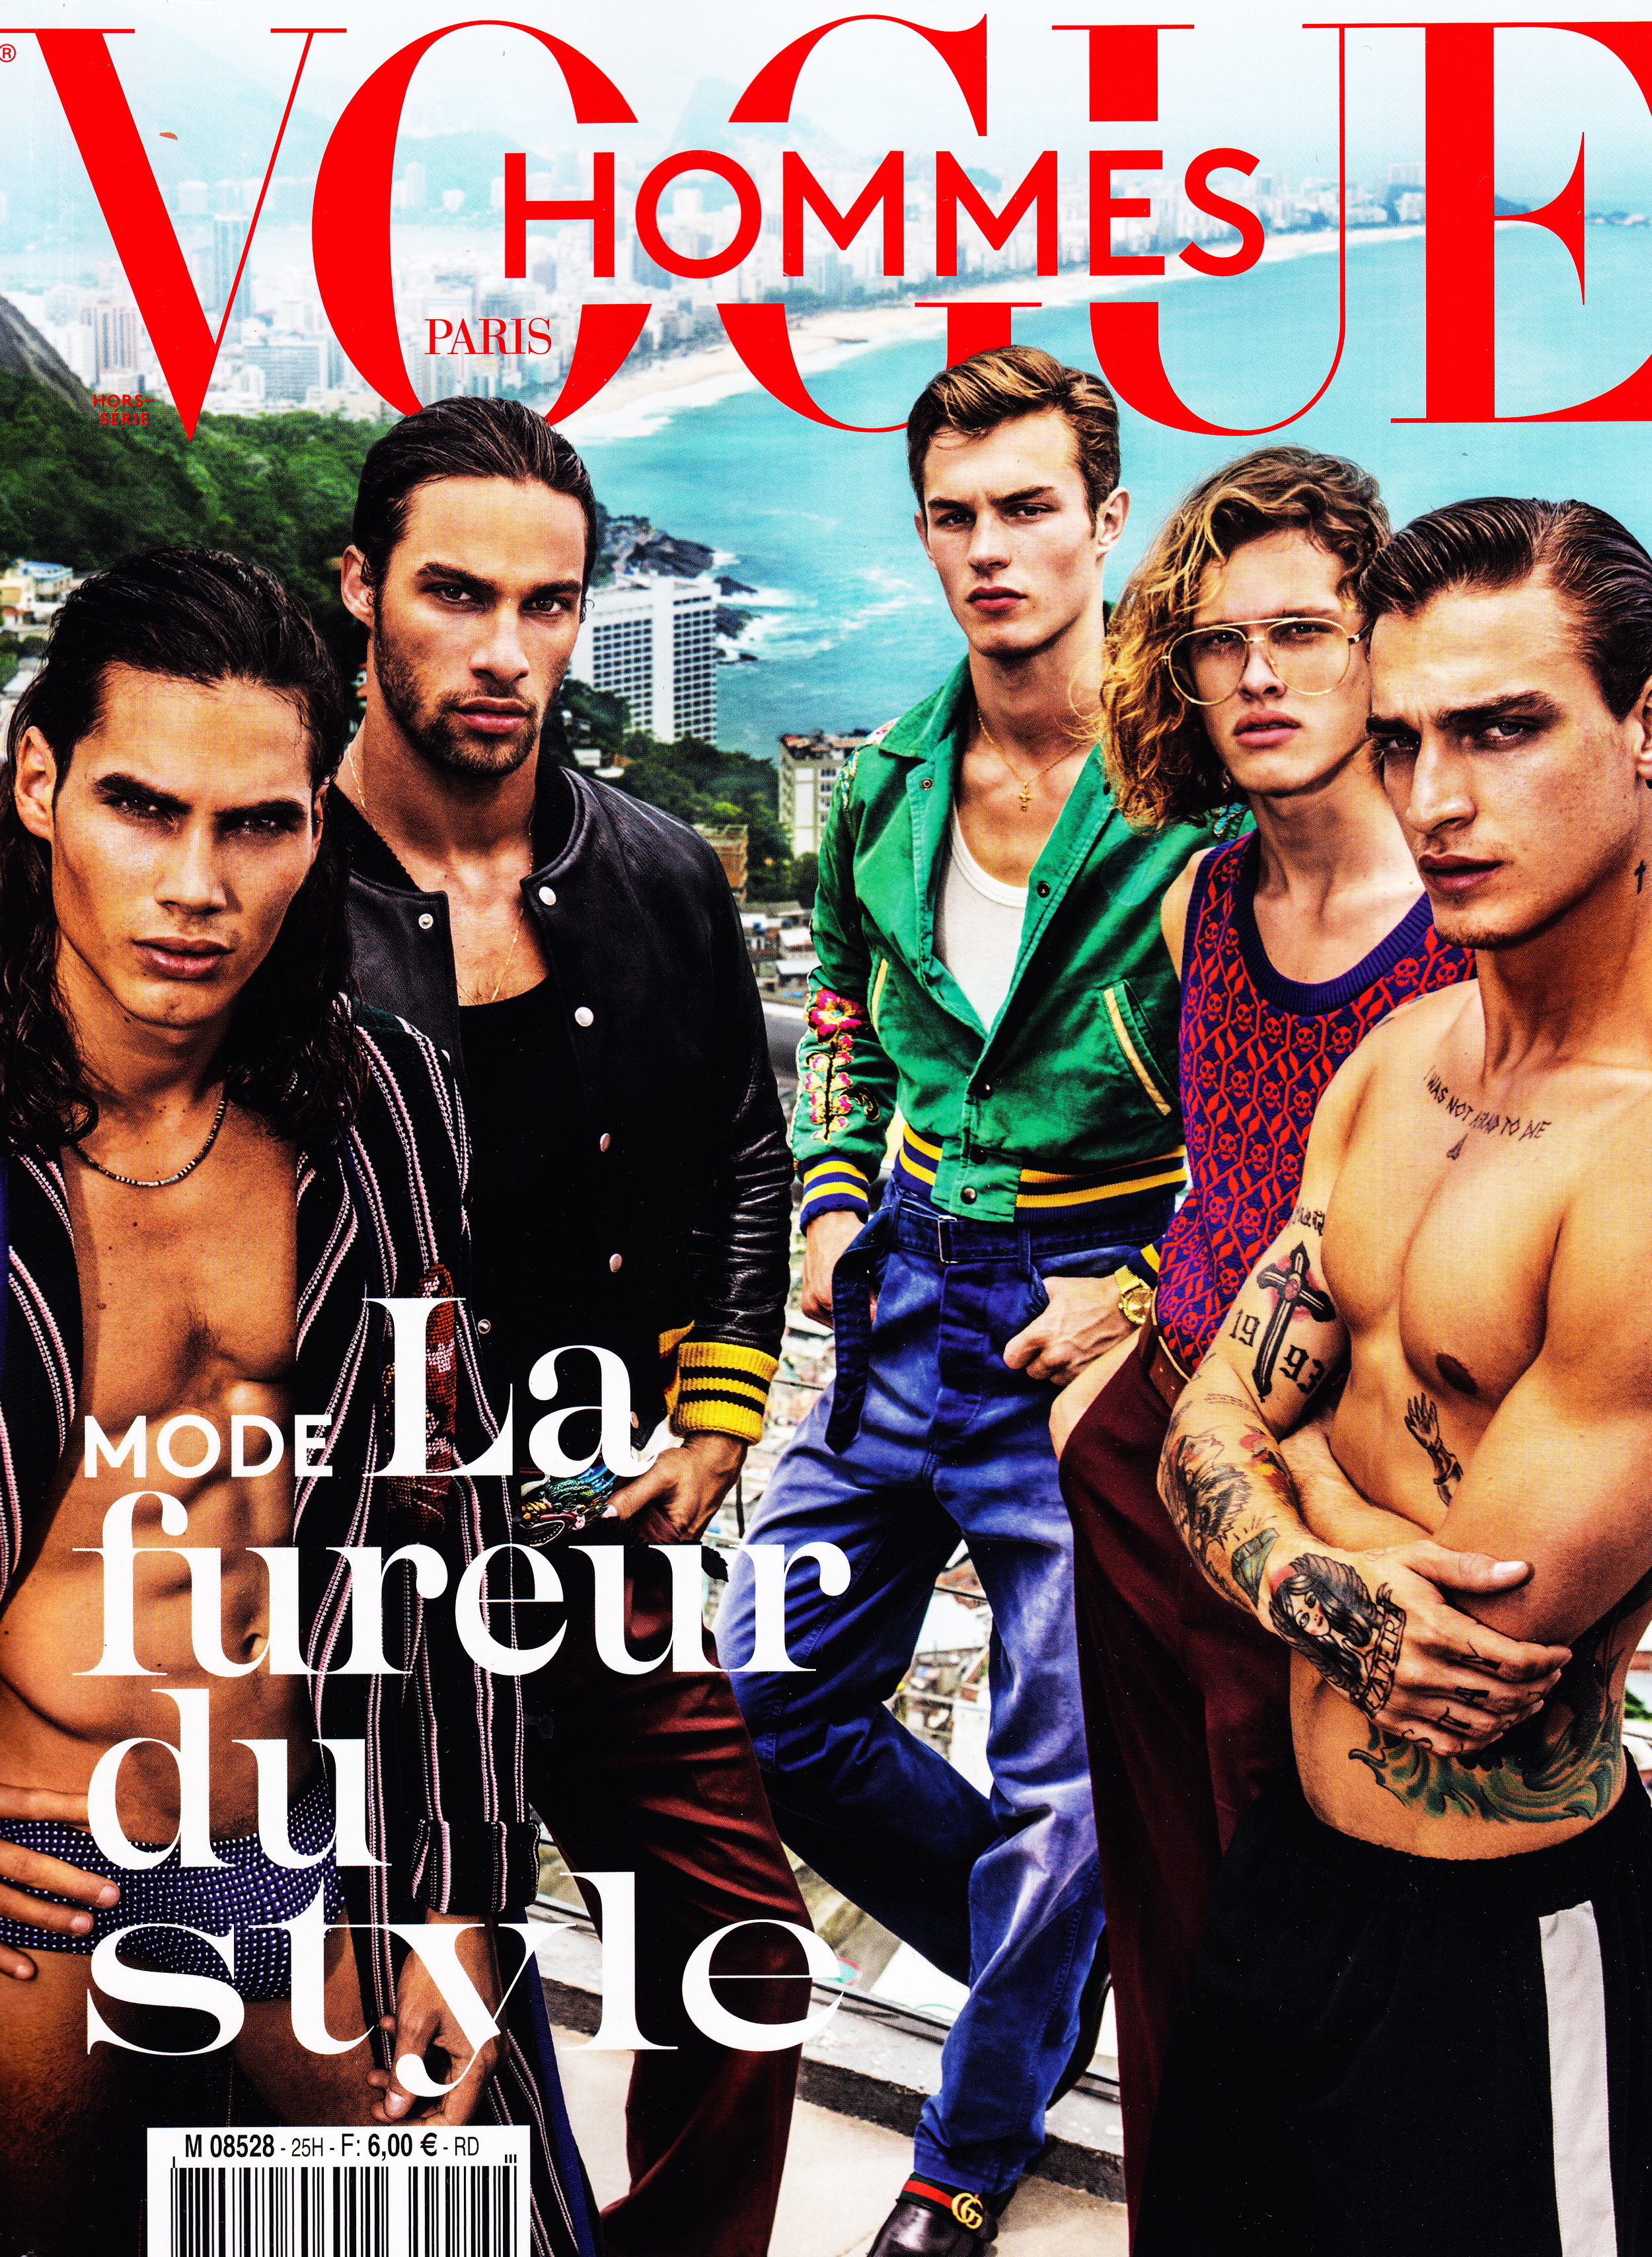 Vogue-front.jpg